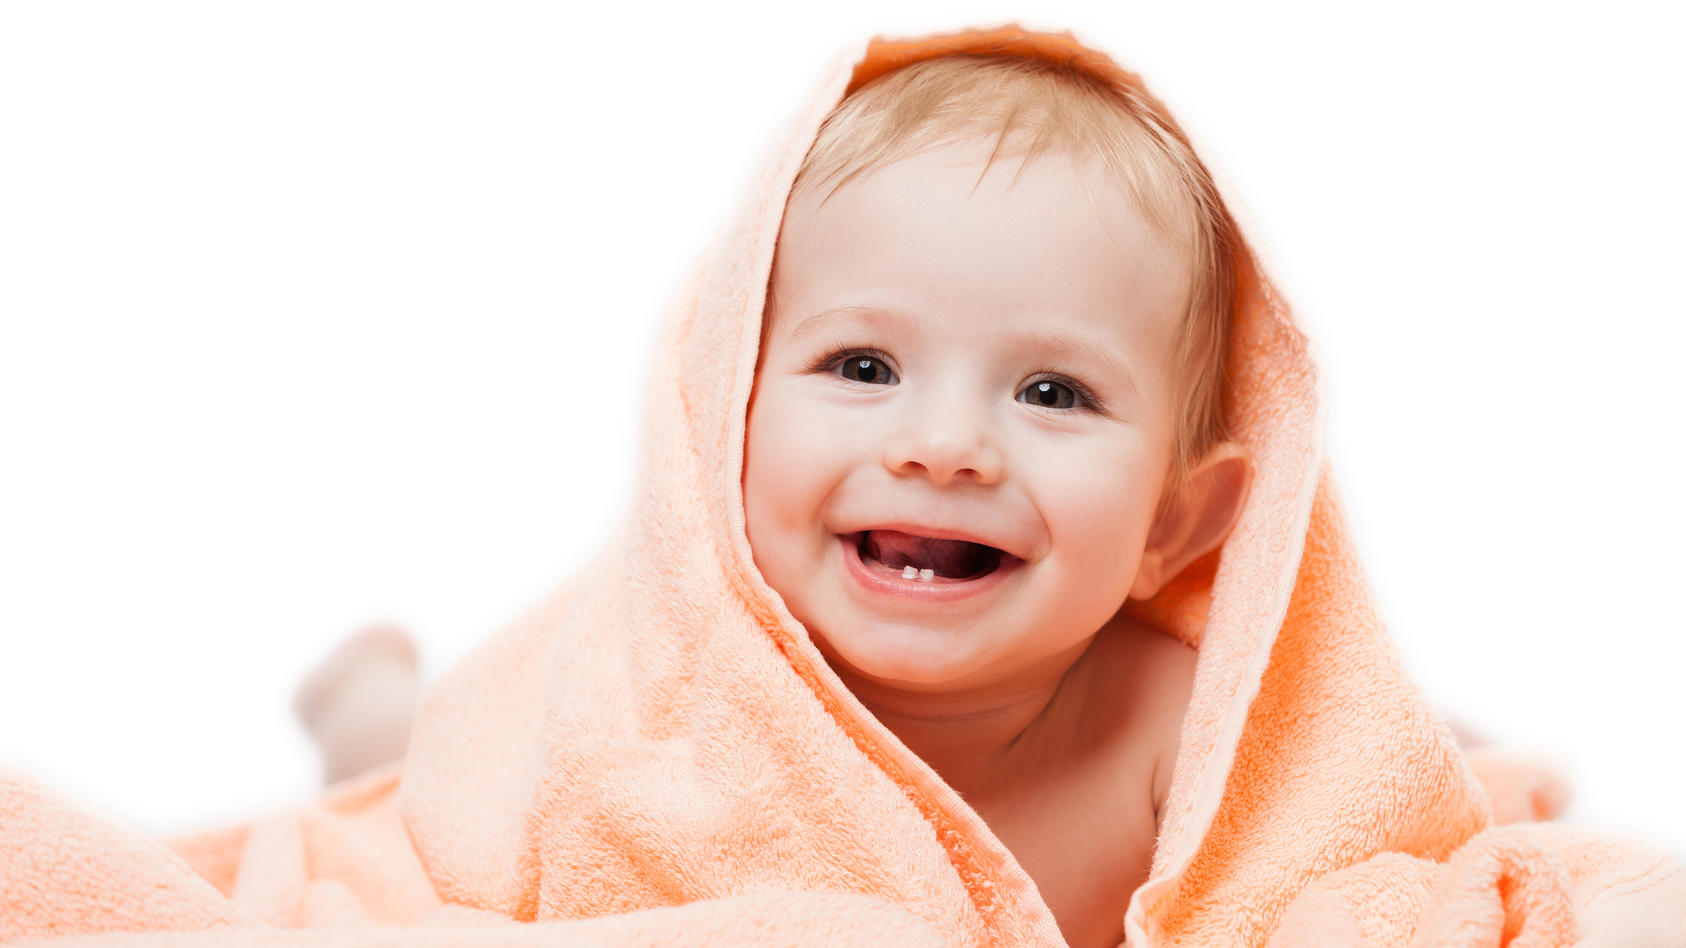 Wenn Babys erster Zahn kommt, hat das Kind oft starke Schmerzen. Ein Zahnungsgel kann Abhilfe schaffen.